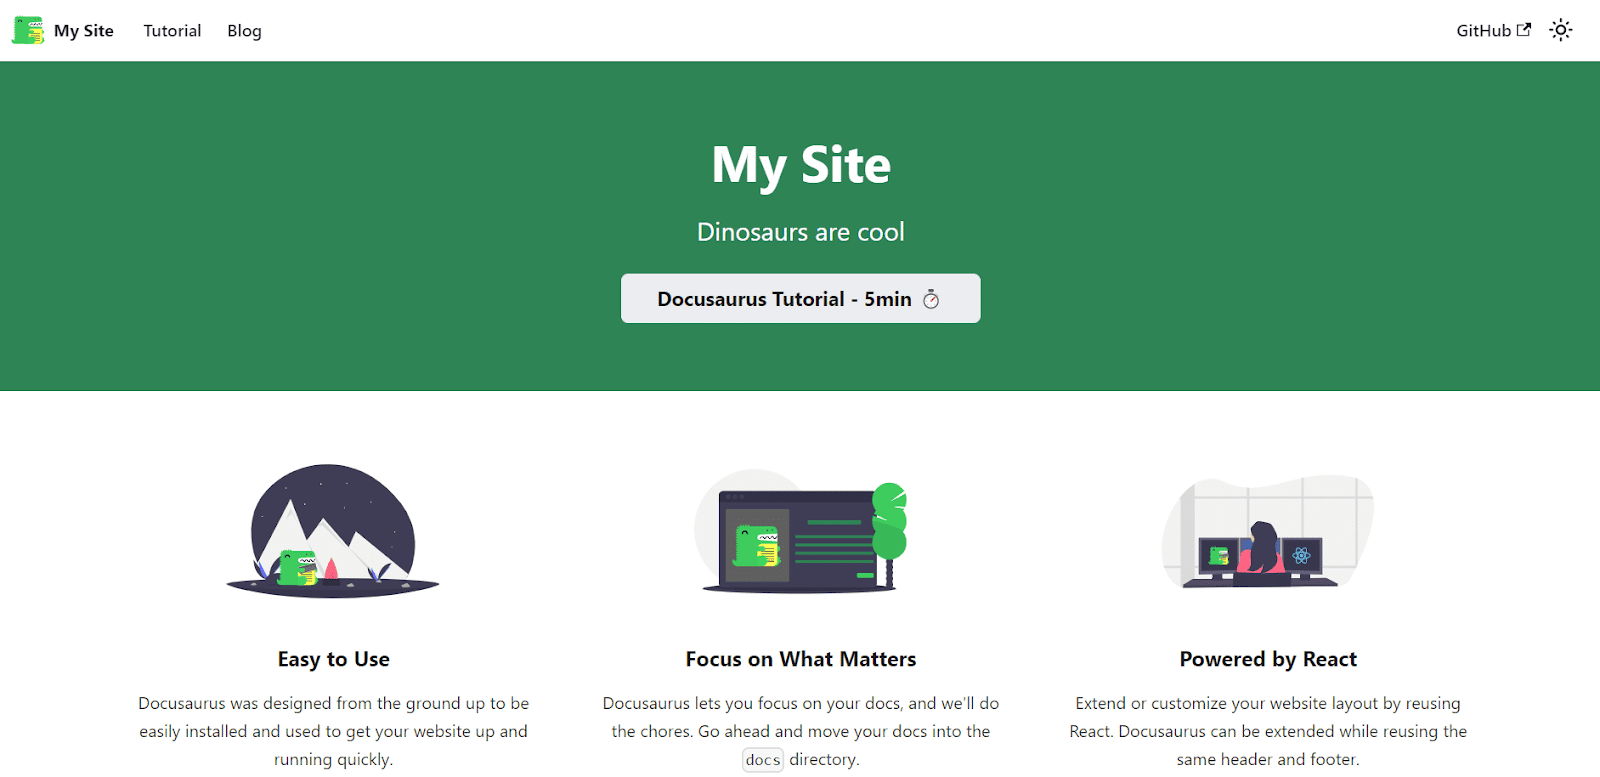 A página inicial do Docusaurus implantado, no topo da qual há um banner verde com o título "Meu Site" e o slogan "Dinossauros são legais" em texto branco.